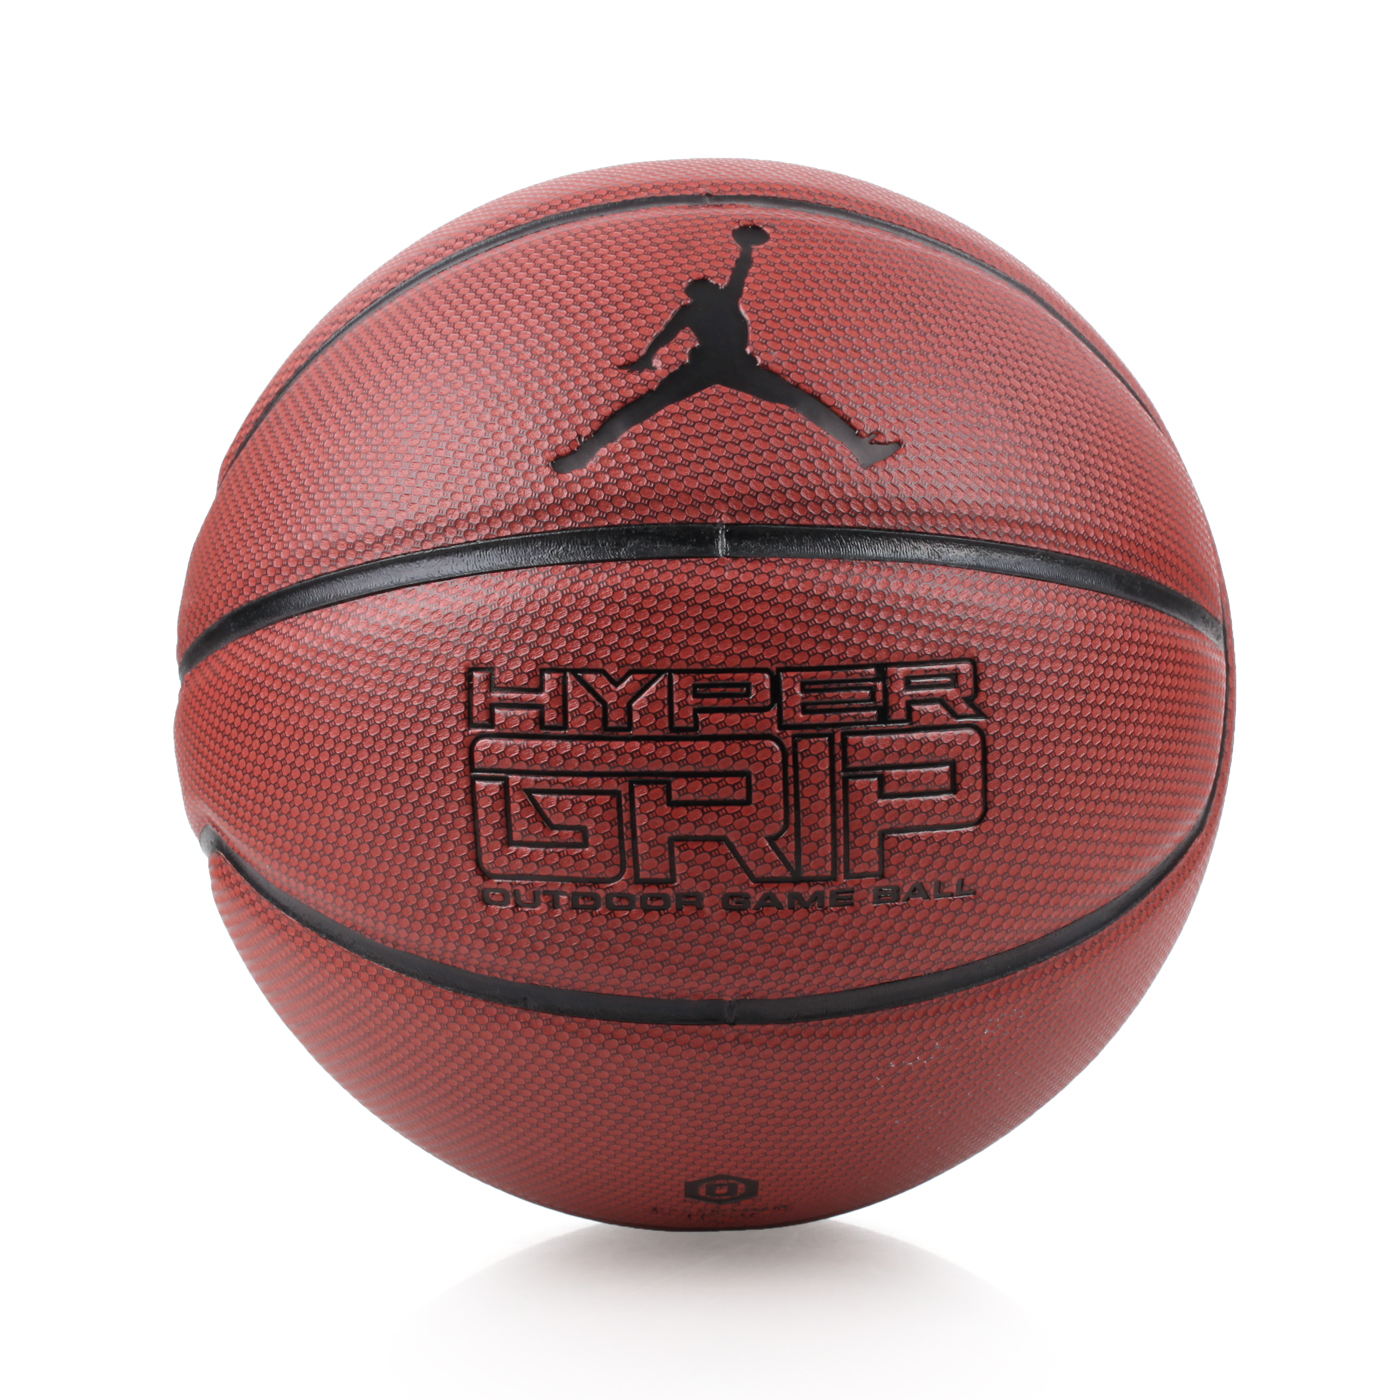 NIKE JORDAN HYPER GRIP 7號籃球 JKI0185807 - 咖啡黑